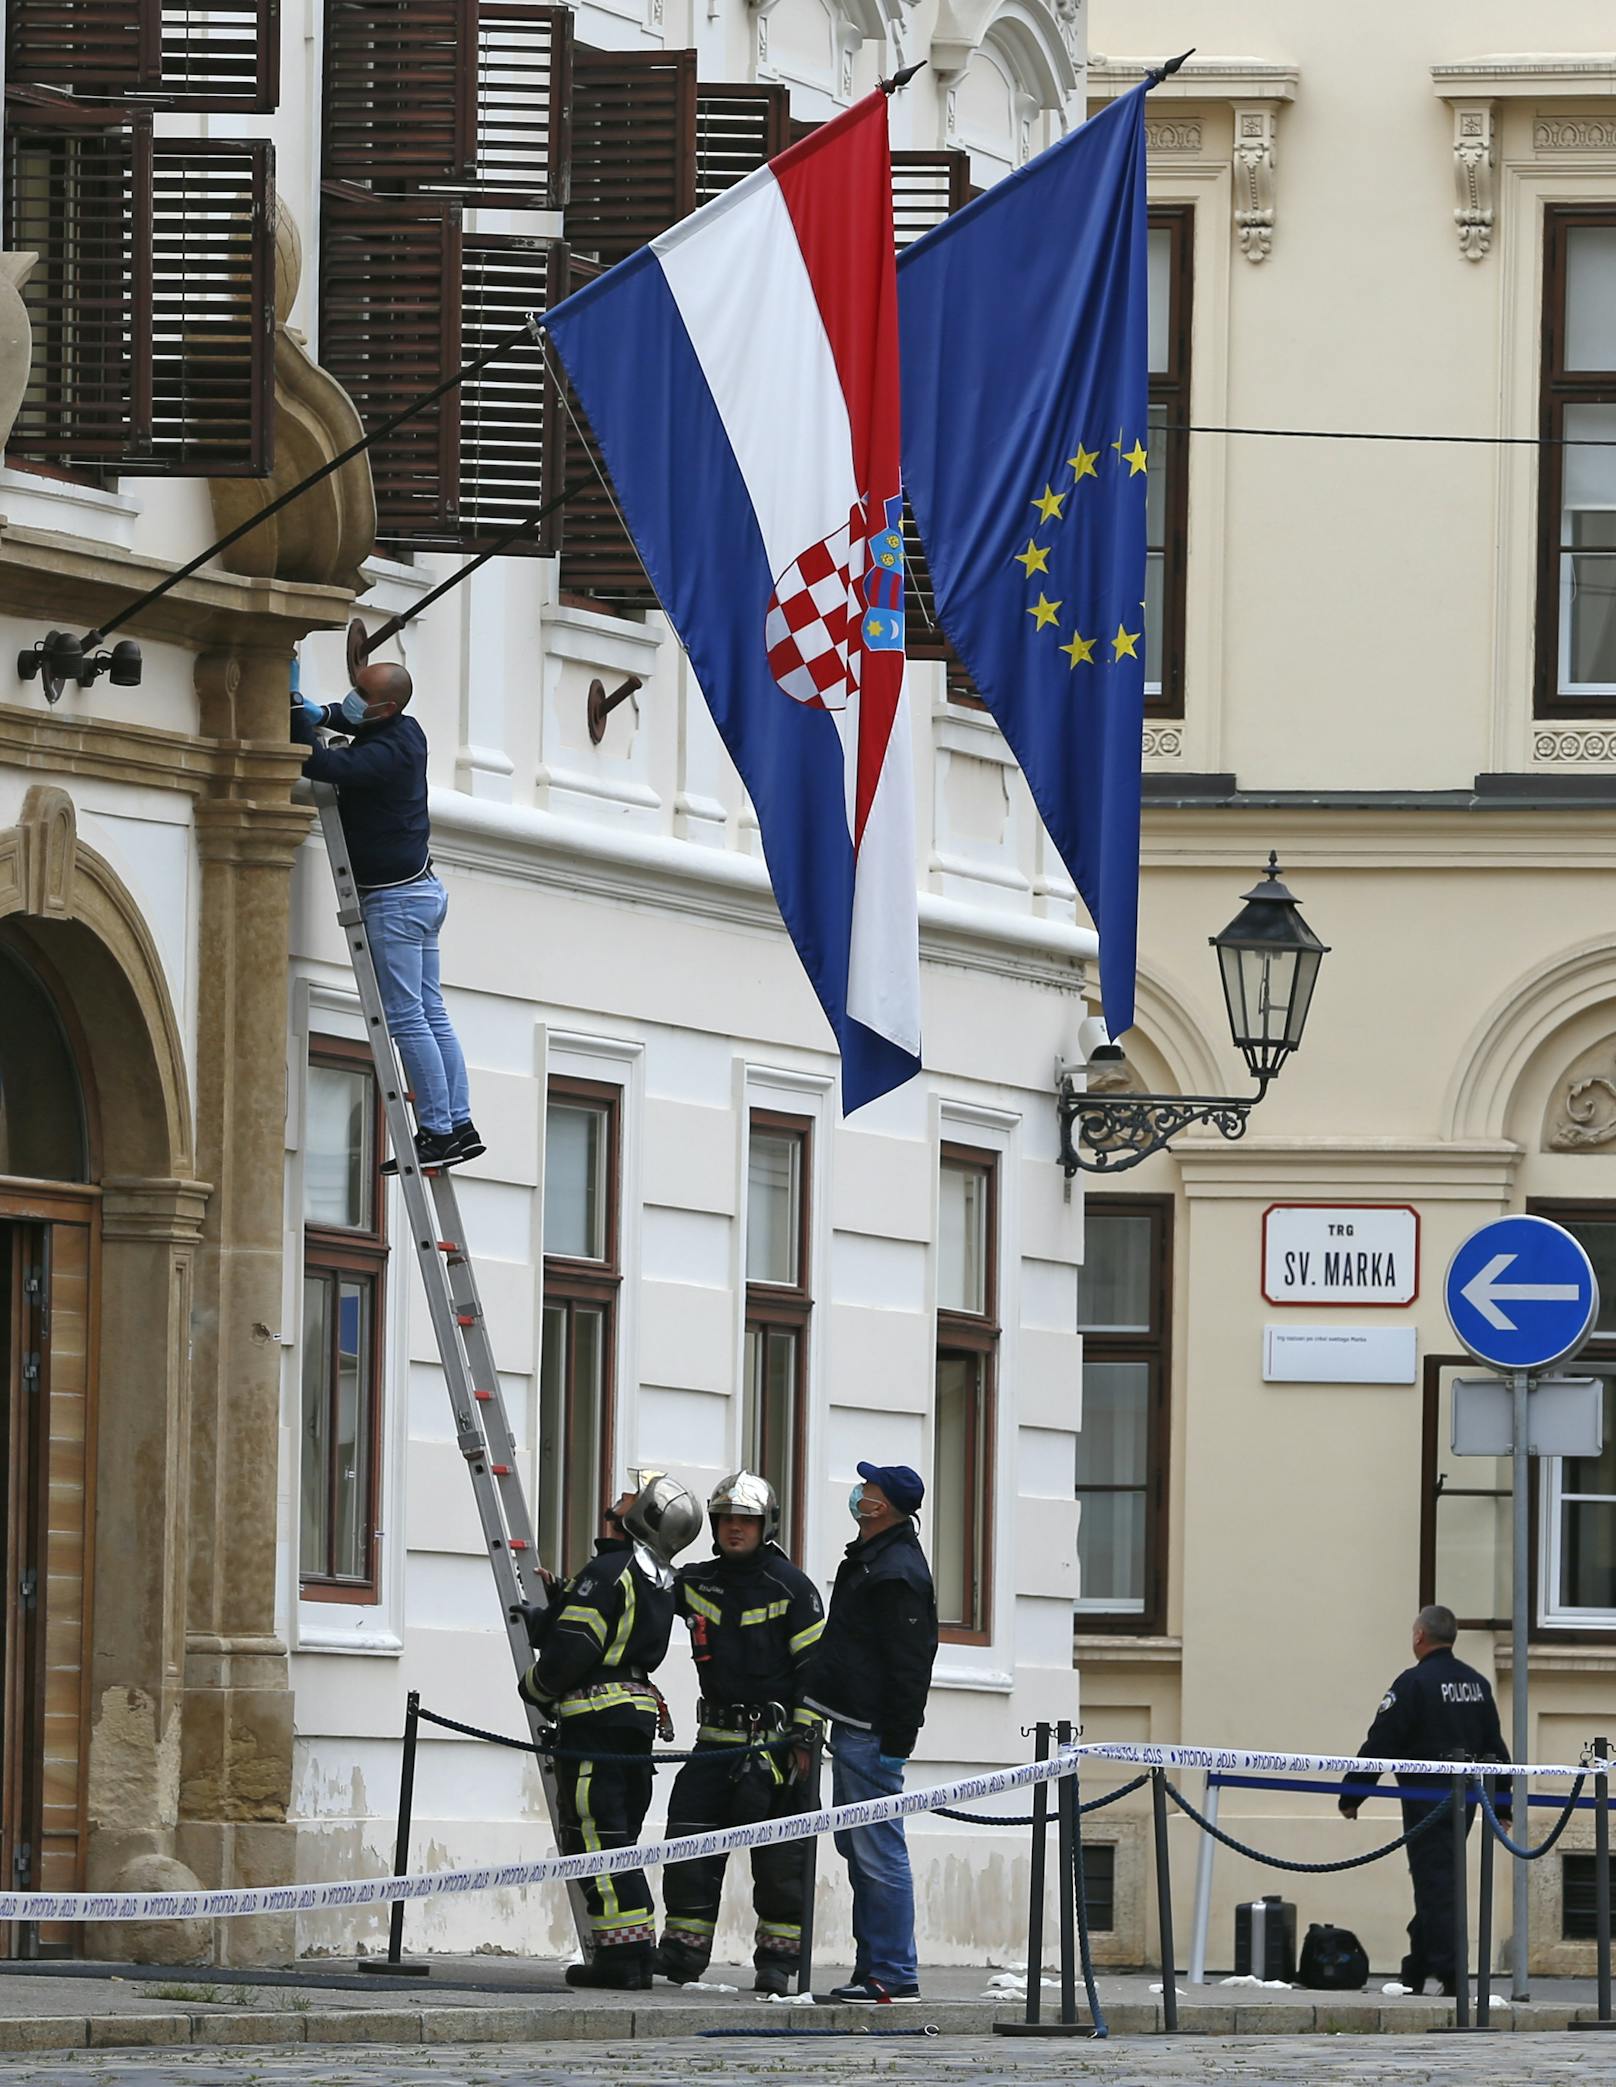 Am Montag kam es in Zagreb zu einem Schusswaffengebrauch vor dem Regierungsgebäude.